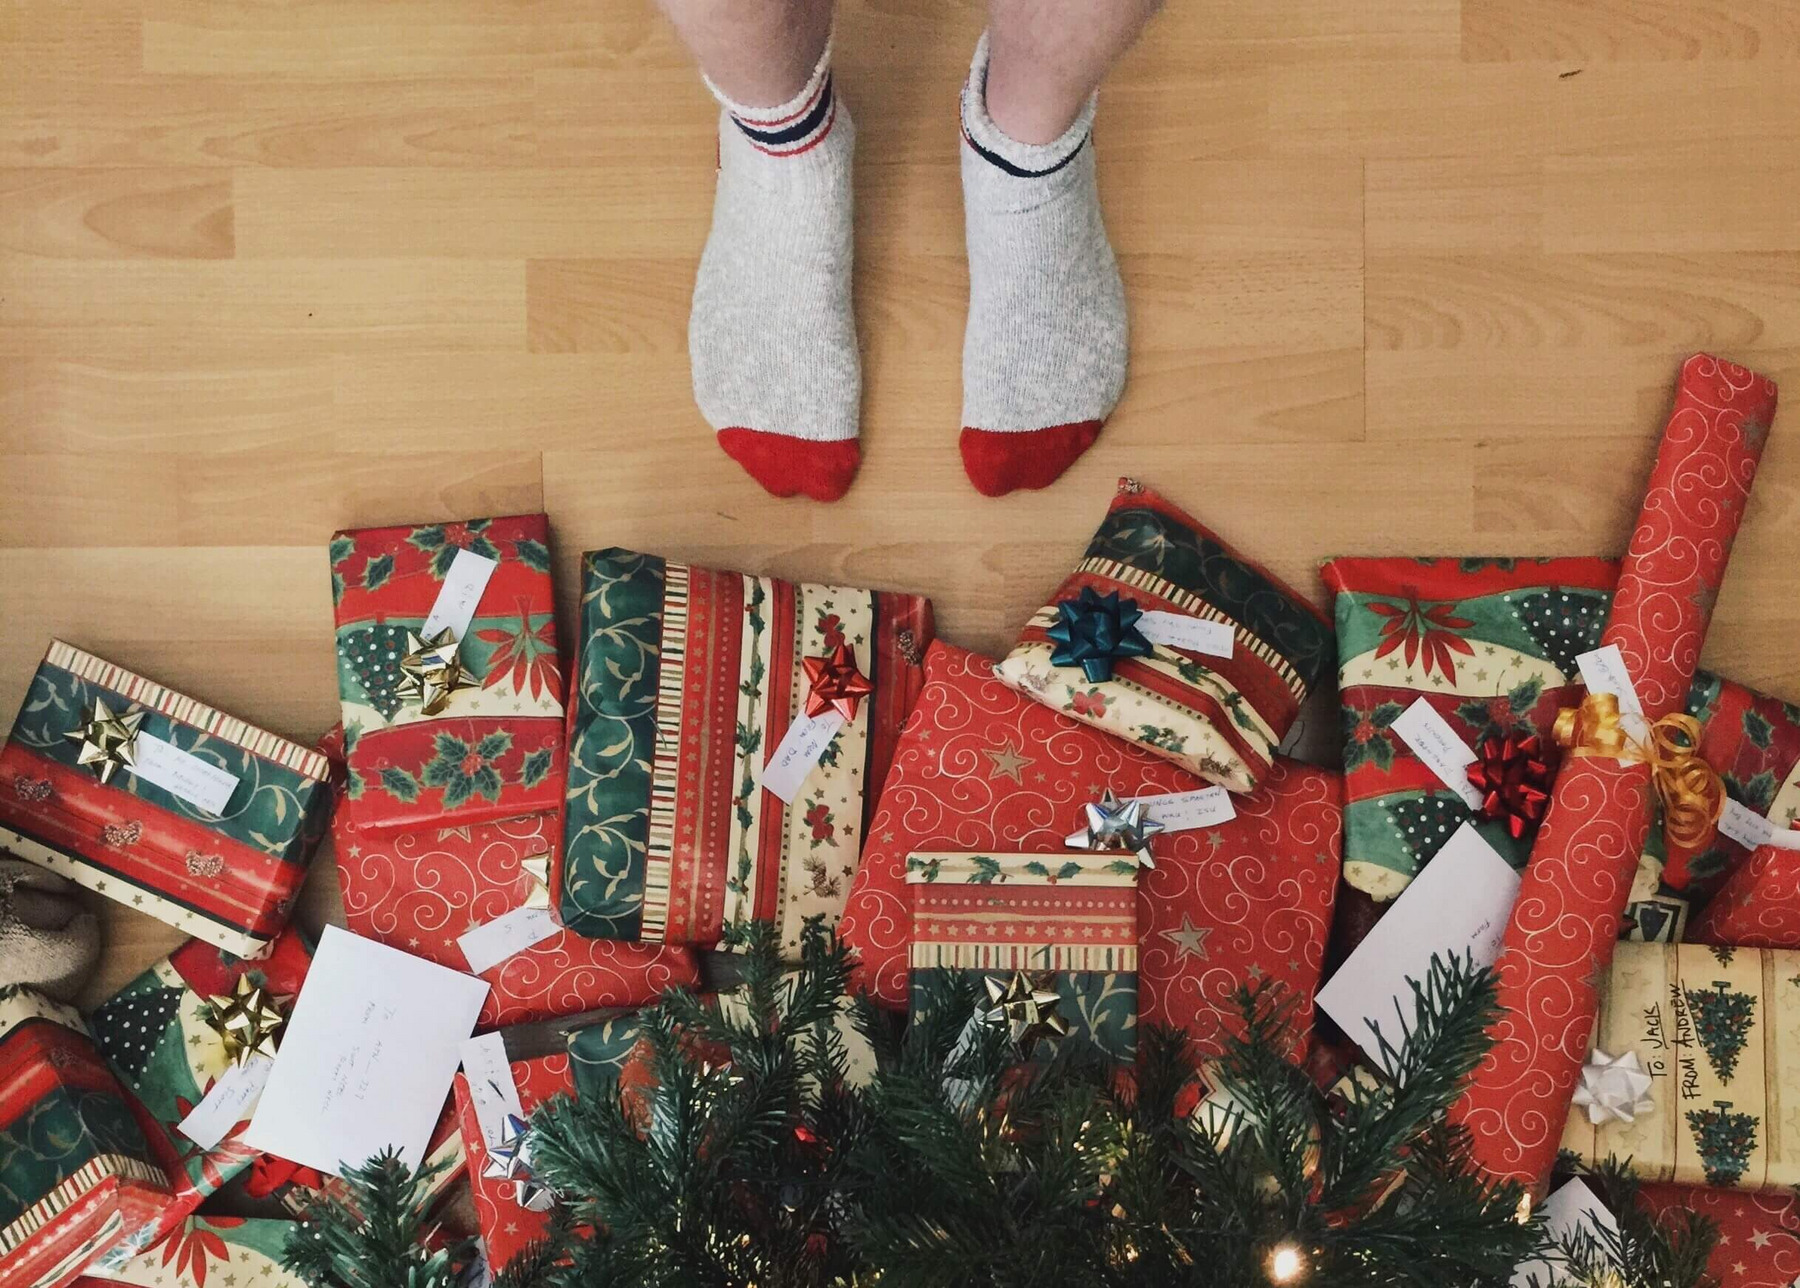 Eine Person in Socken steht vor einem Weihnachtsbaum, unter dem viele bunt eingepackte Geschenke liegen